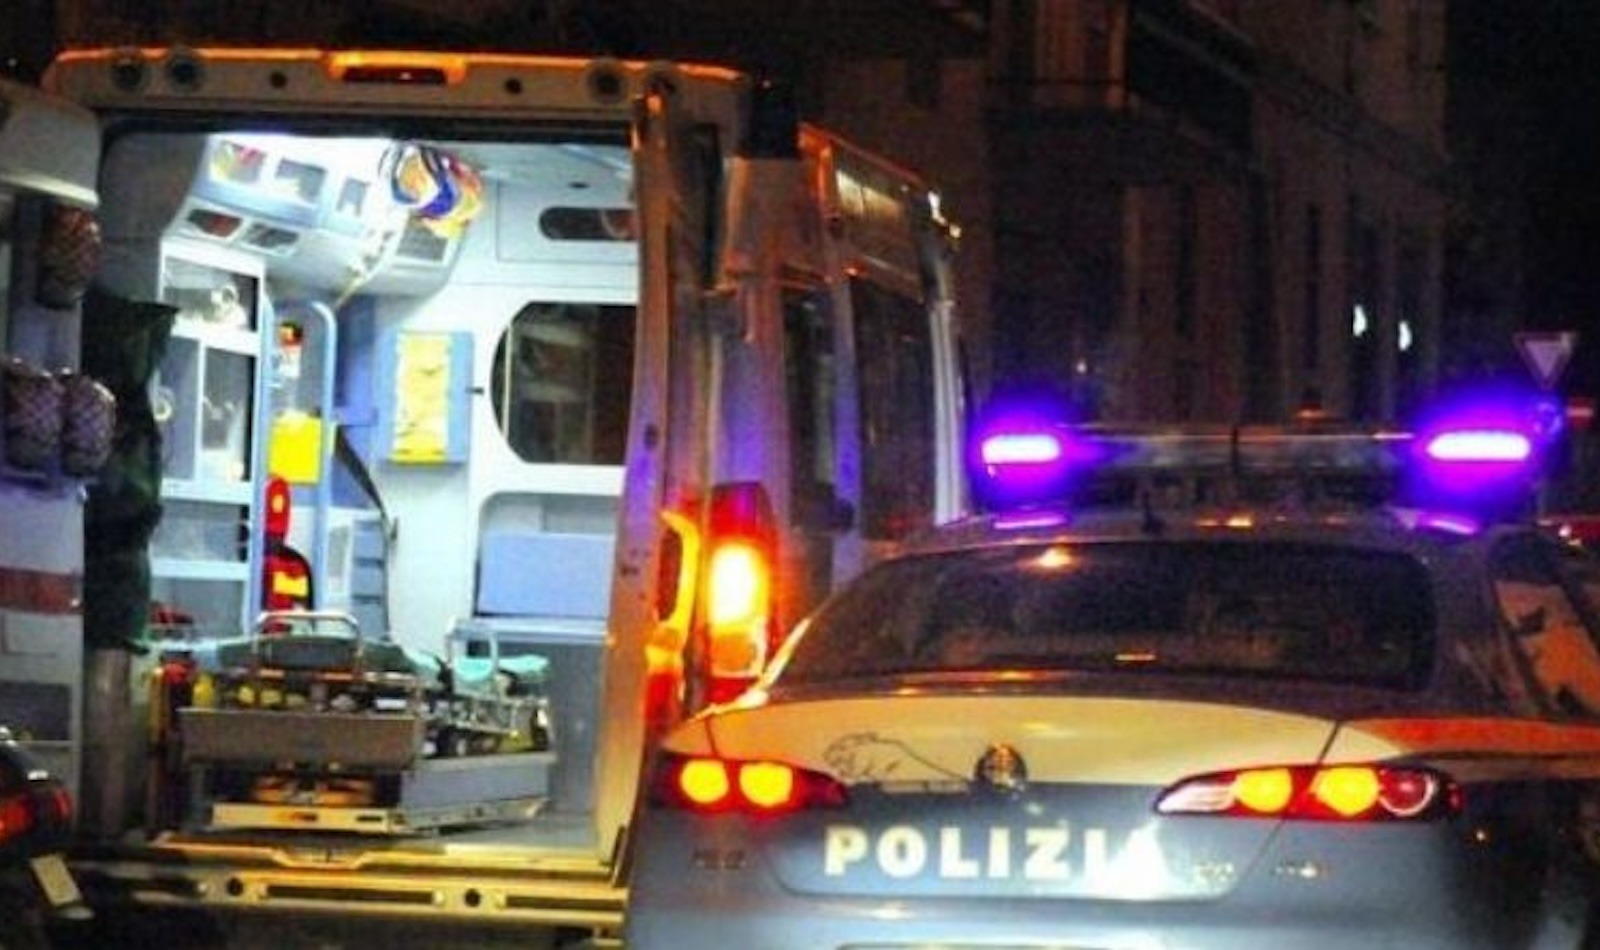 intervento ambulanza e polizia